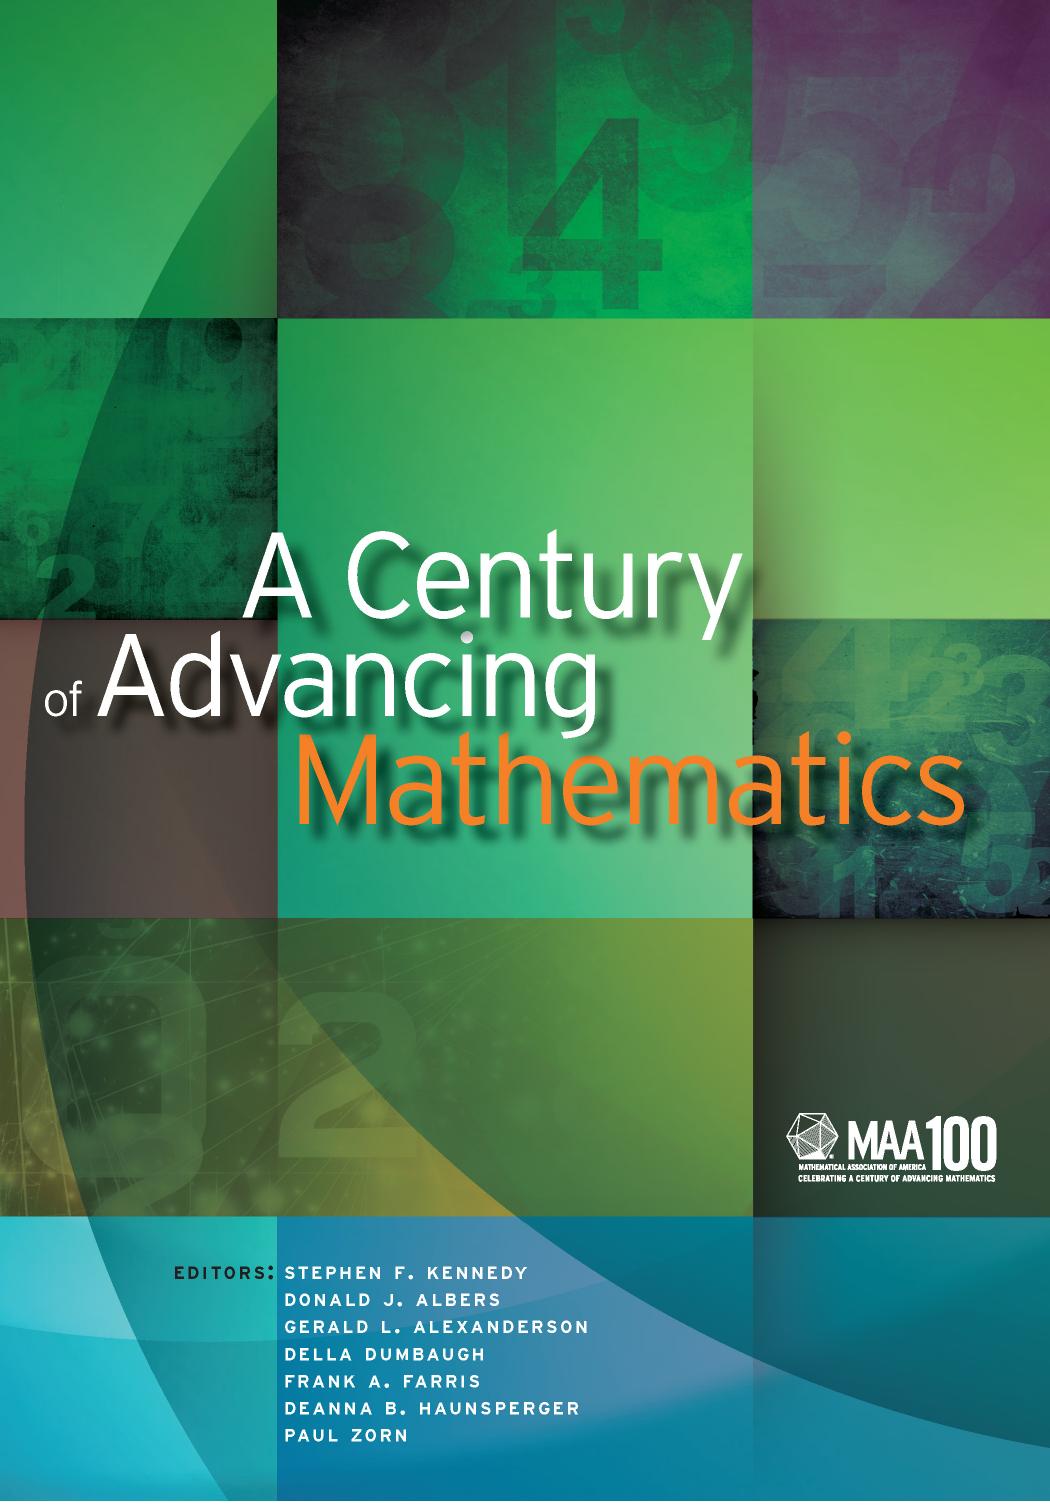 A Century of Advancing Mathematics